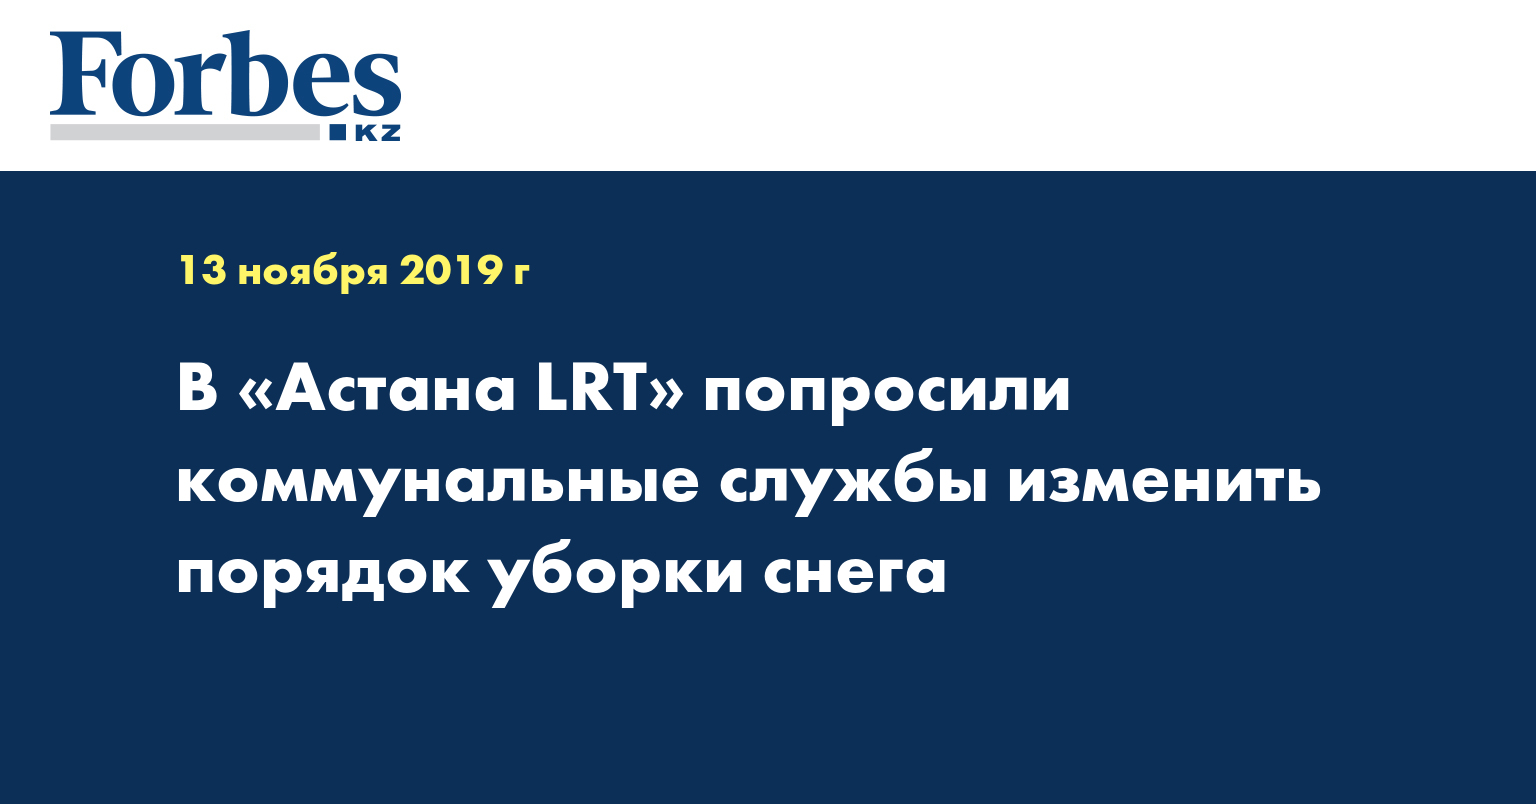 В «Астана LRT» попросили коммунальные службы изменить порядок уборки снега